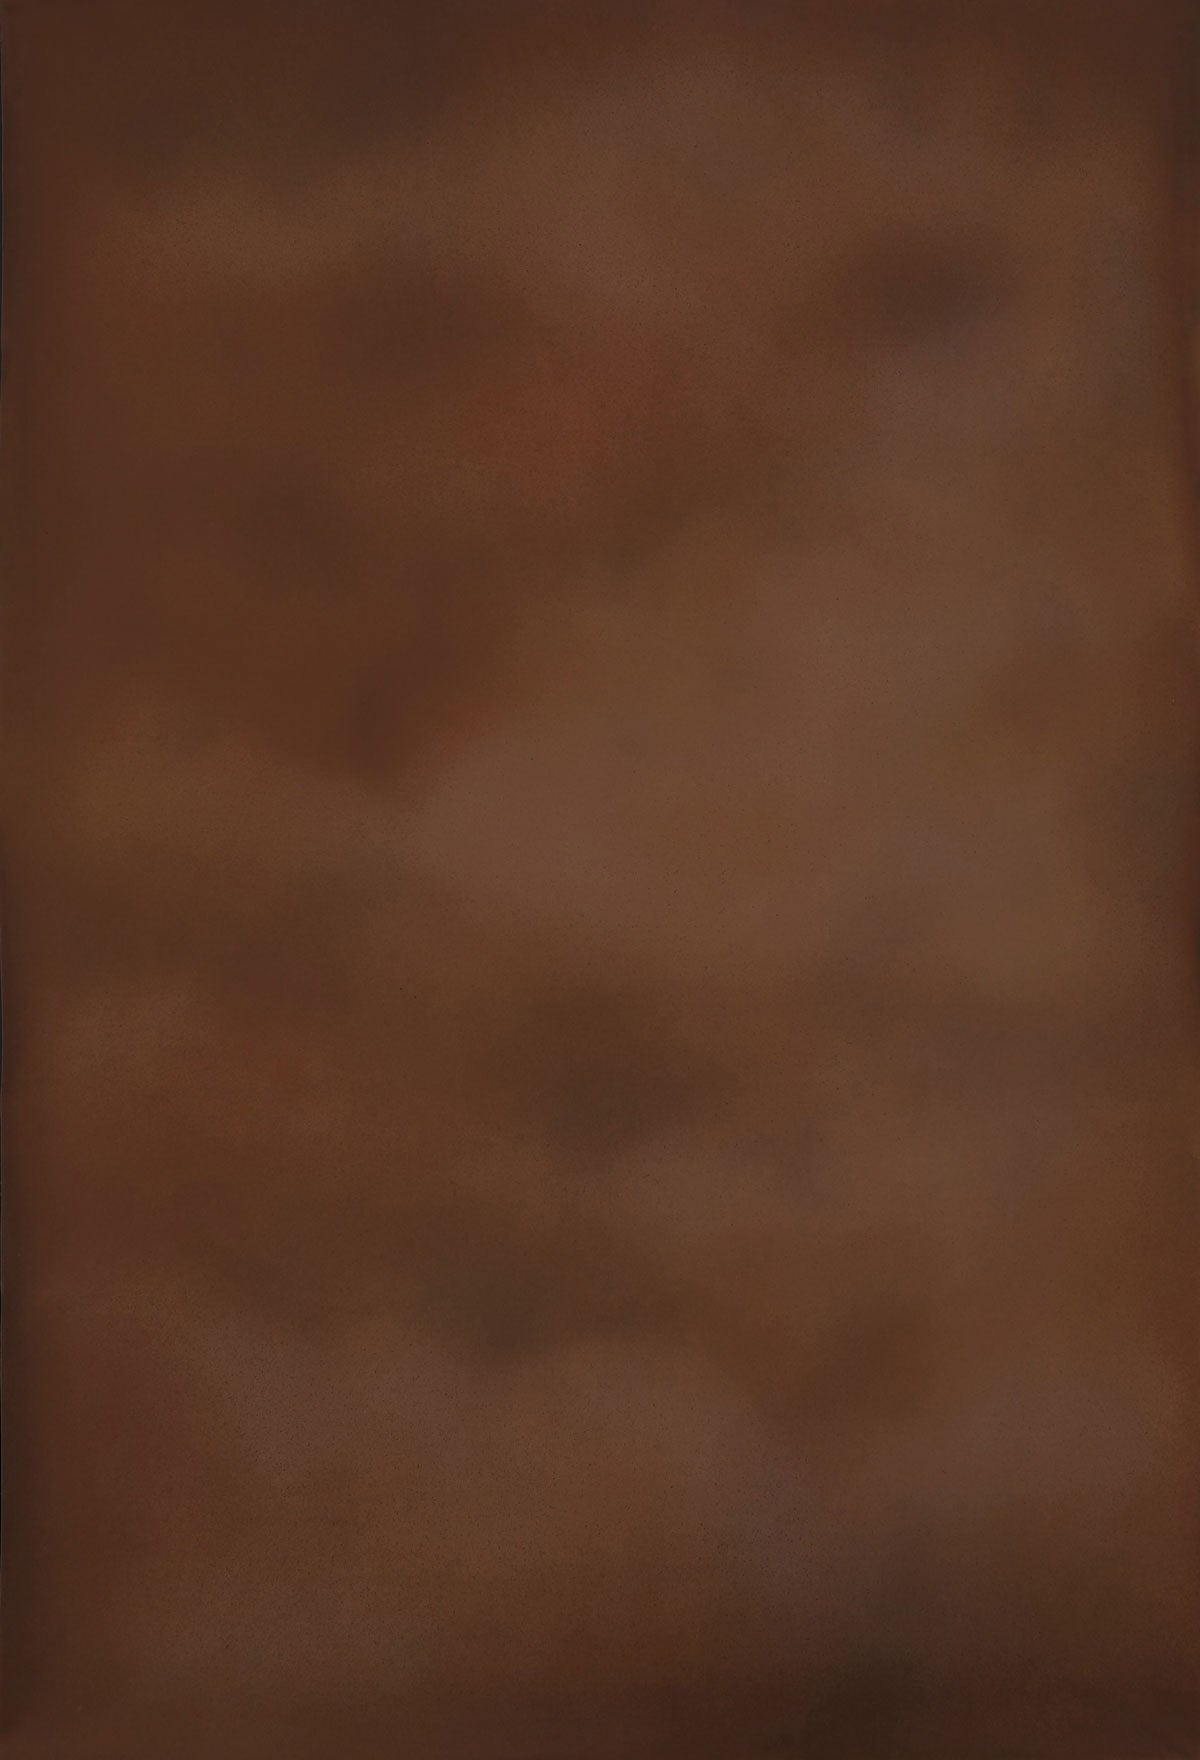 Kate Handgemalte brown tan rust texture Spray Painted Hintergrund Leinwand